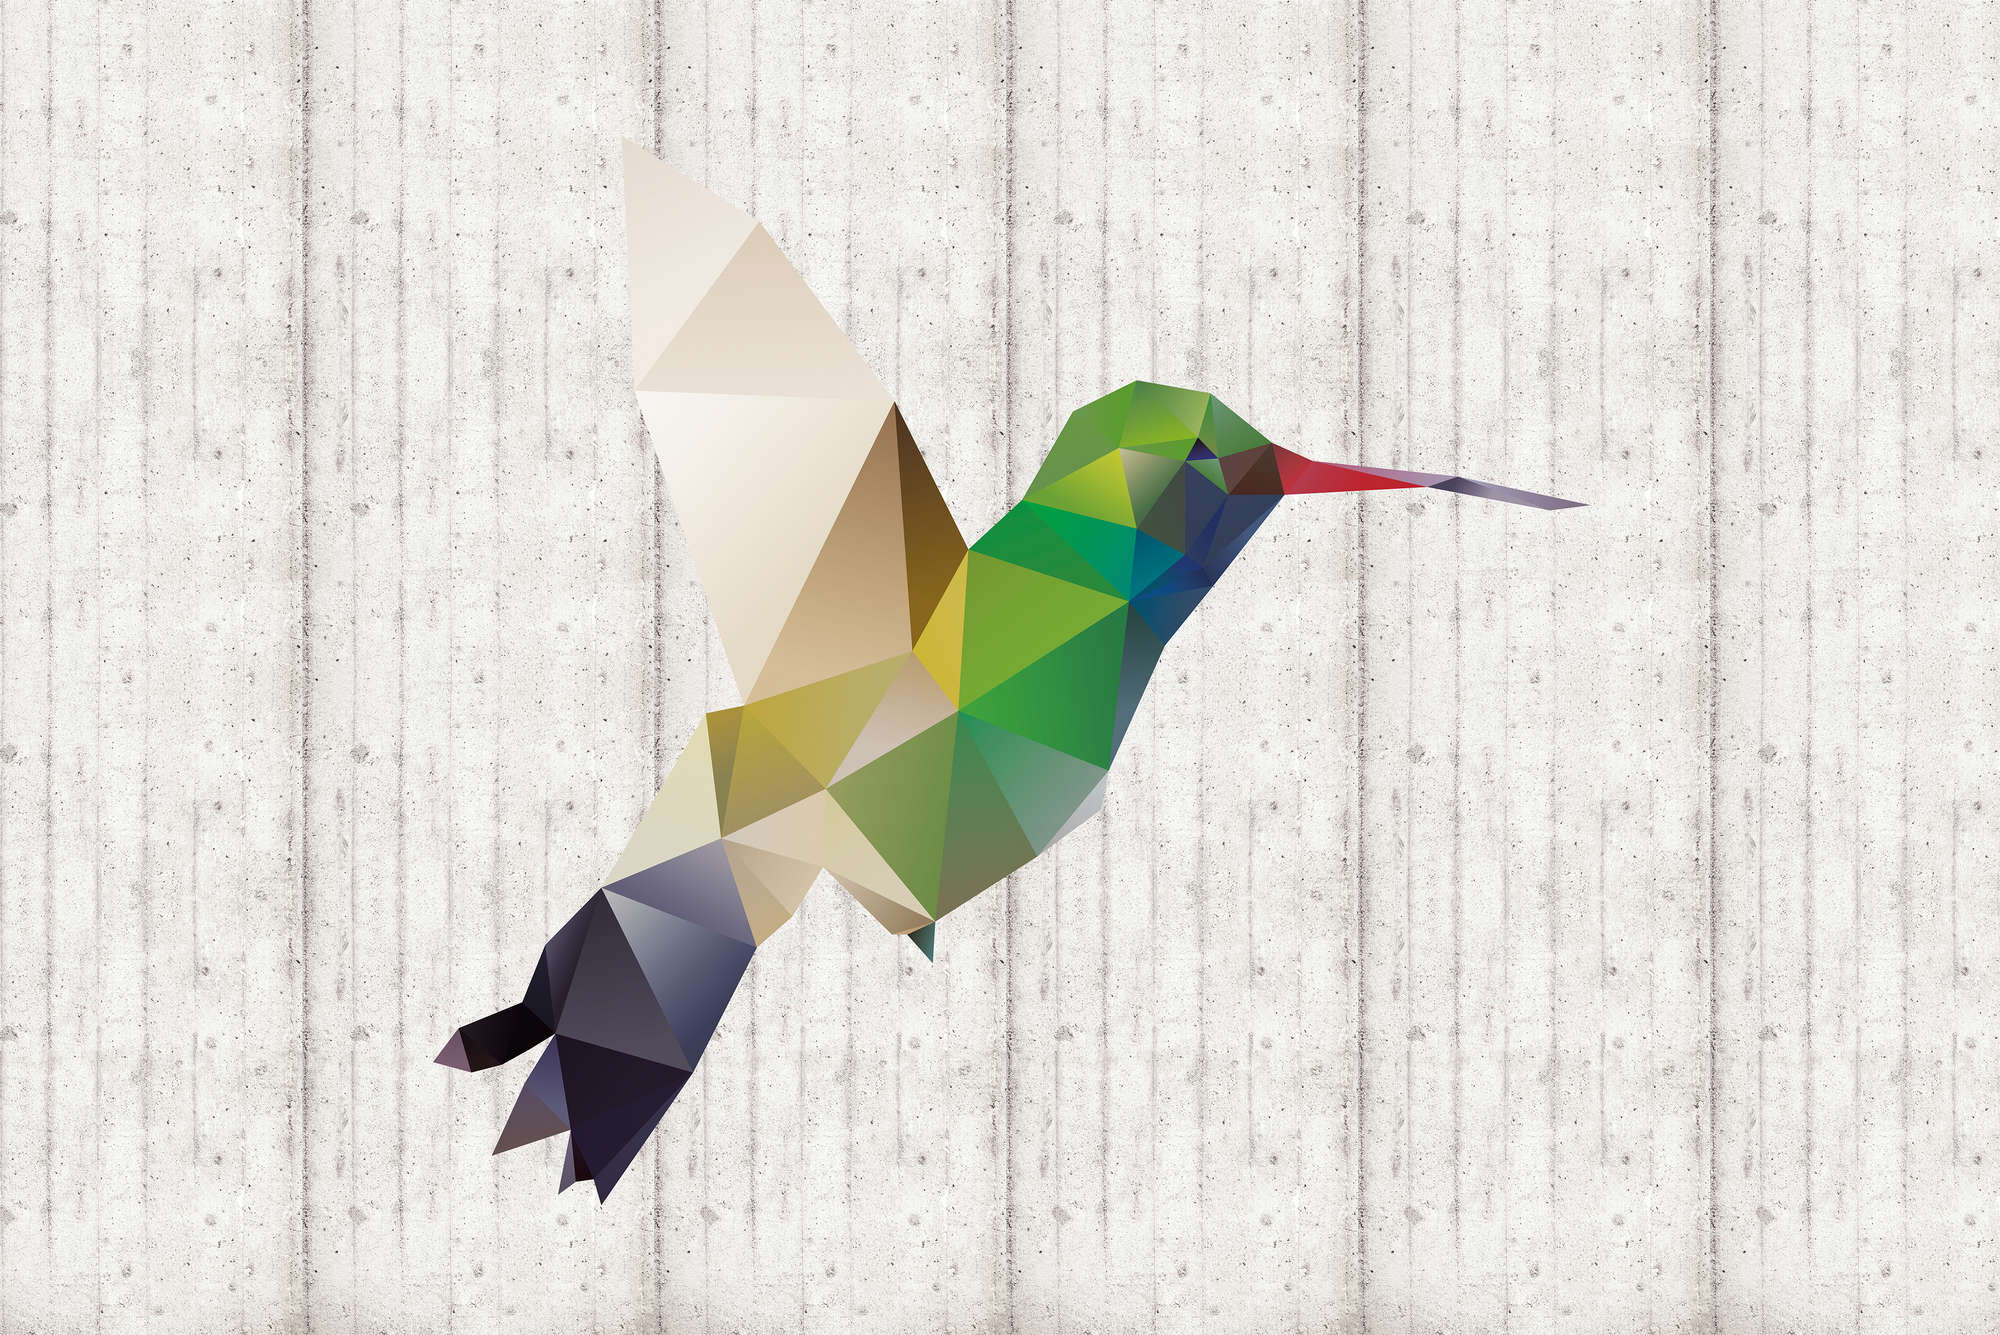             Grafisch behang kolibrie motief op parelmoer glad vlies
        